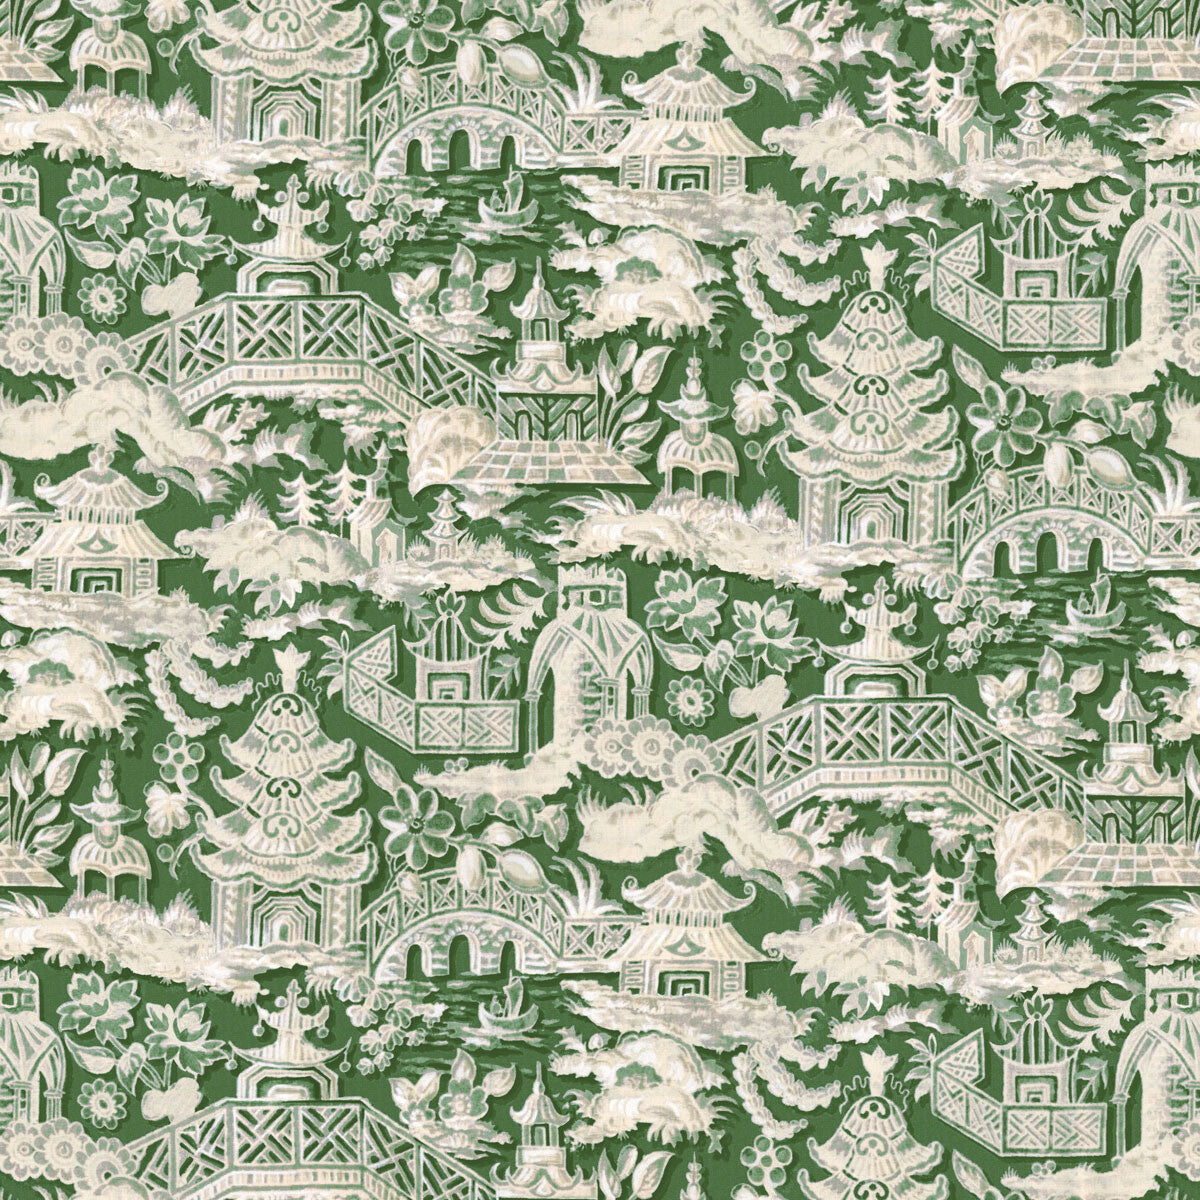 Marta fabric in verde color - pattern LCT1048.005.0 - by Gaston y Daniela in the Lorenzo Castillo VI collection